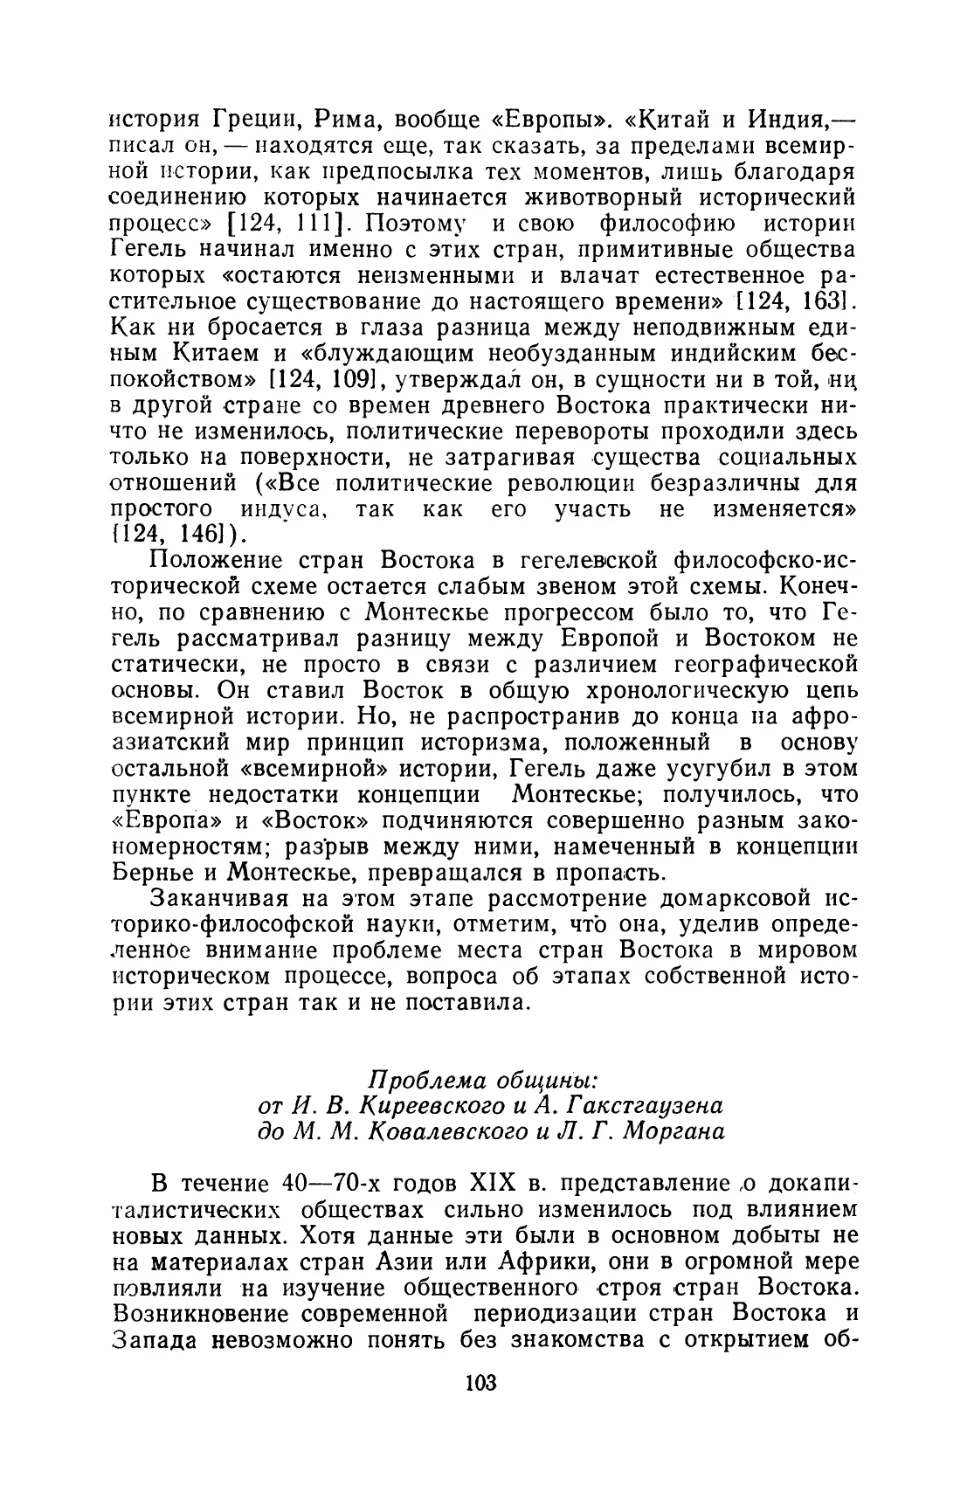 Проблема общины: от И. В. Киреевского и А. Гакстгаузена до М. М. Ковалевского и Л. Г. Моргана